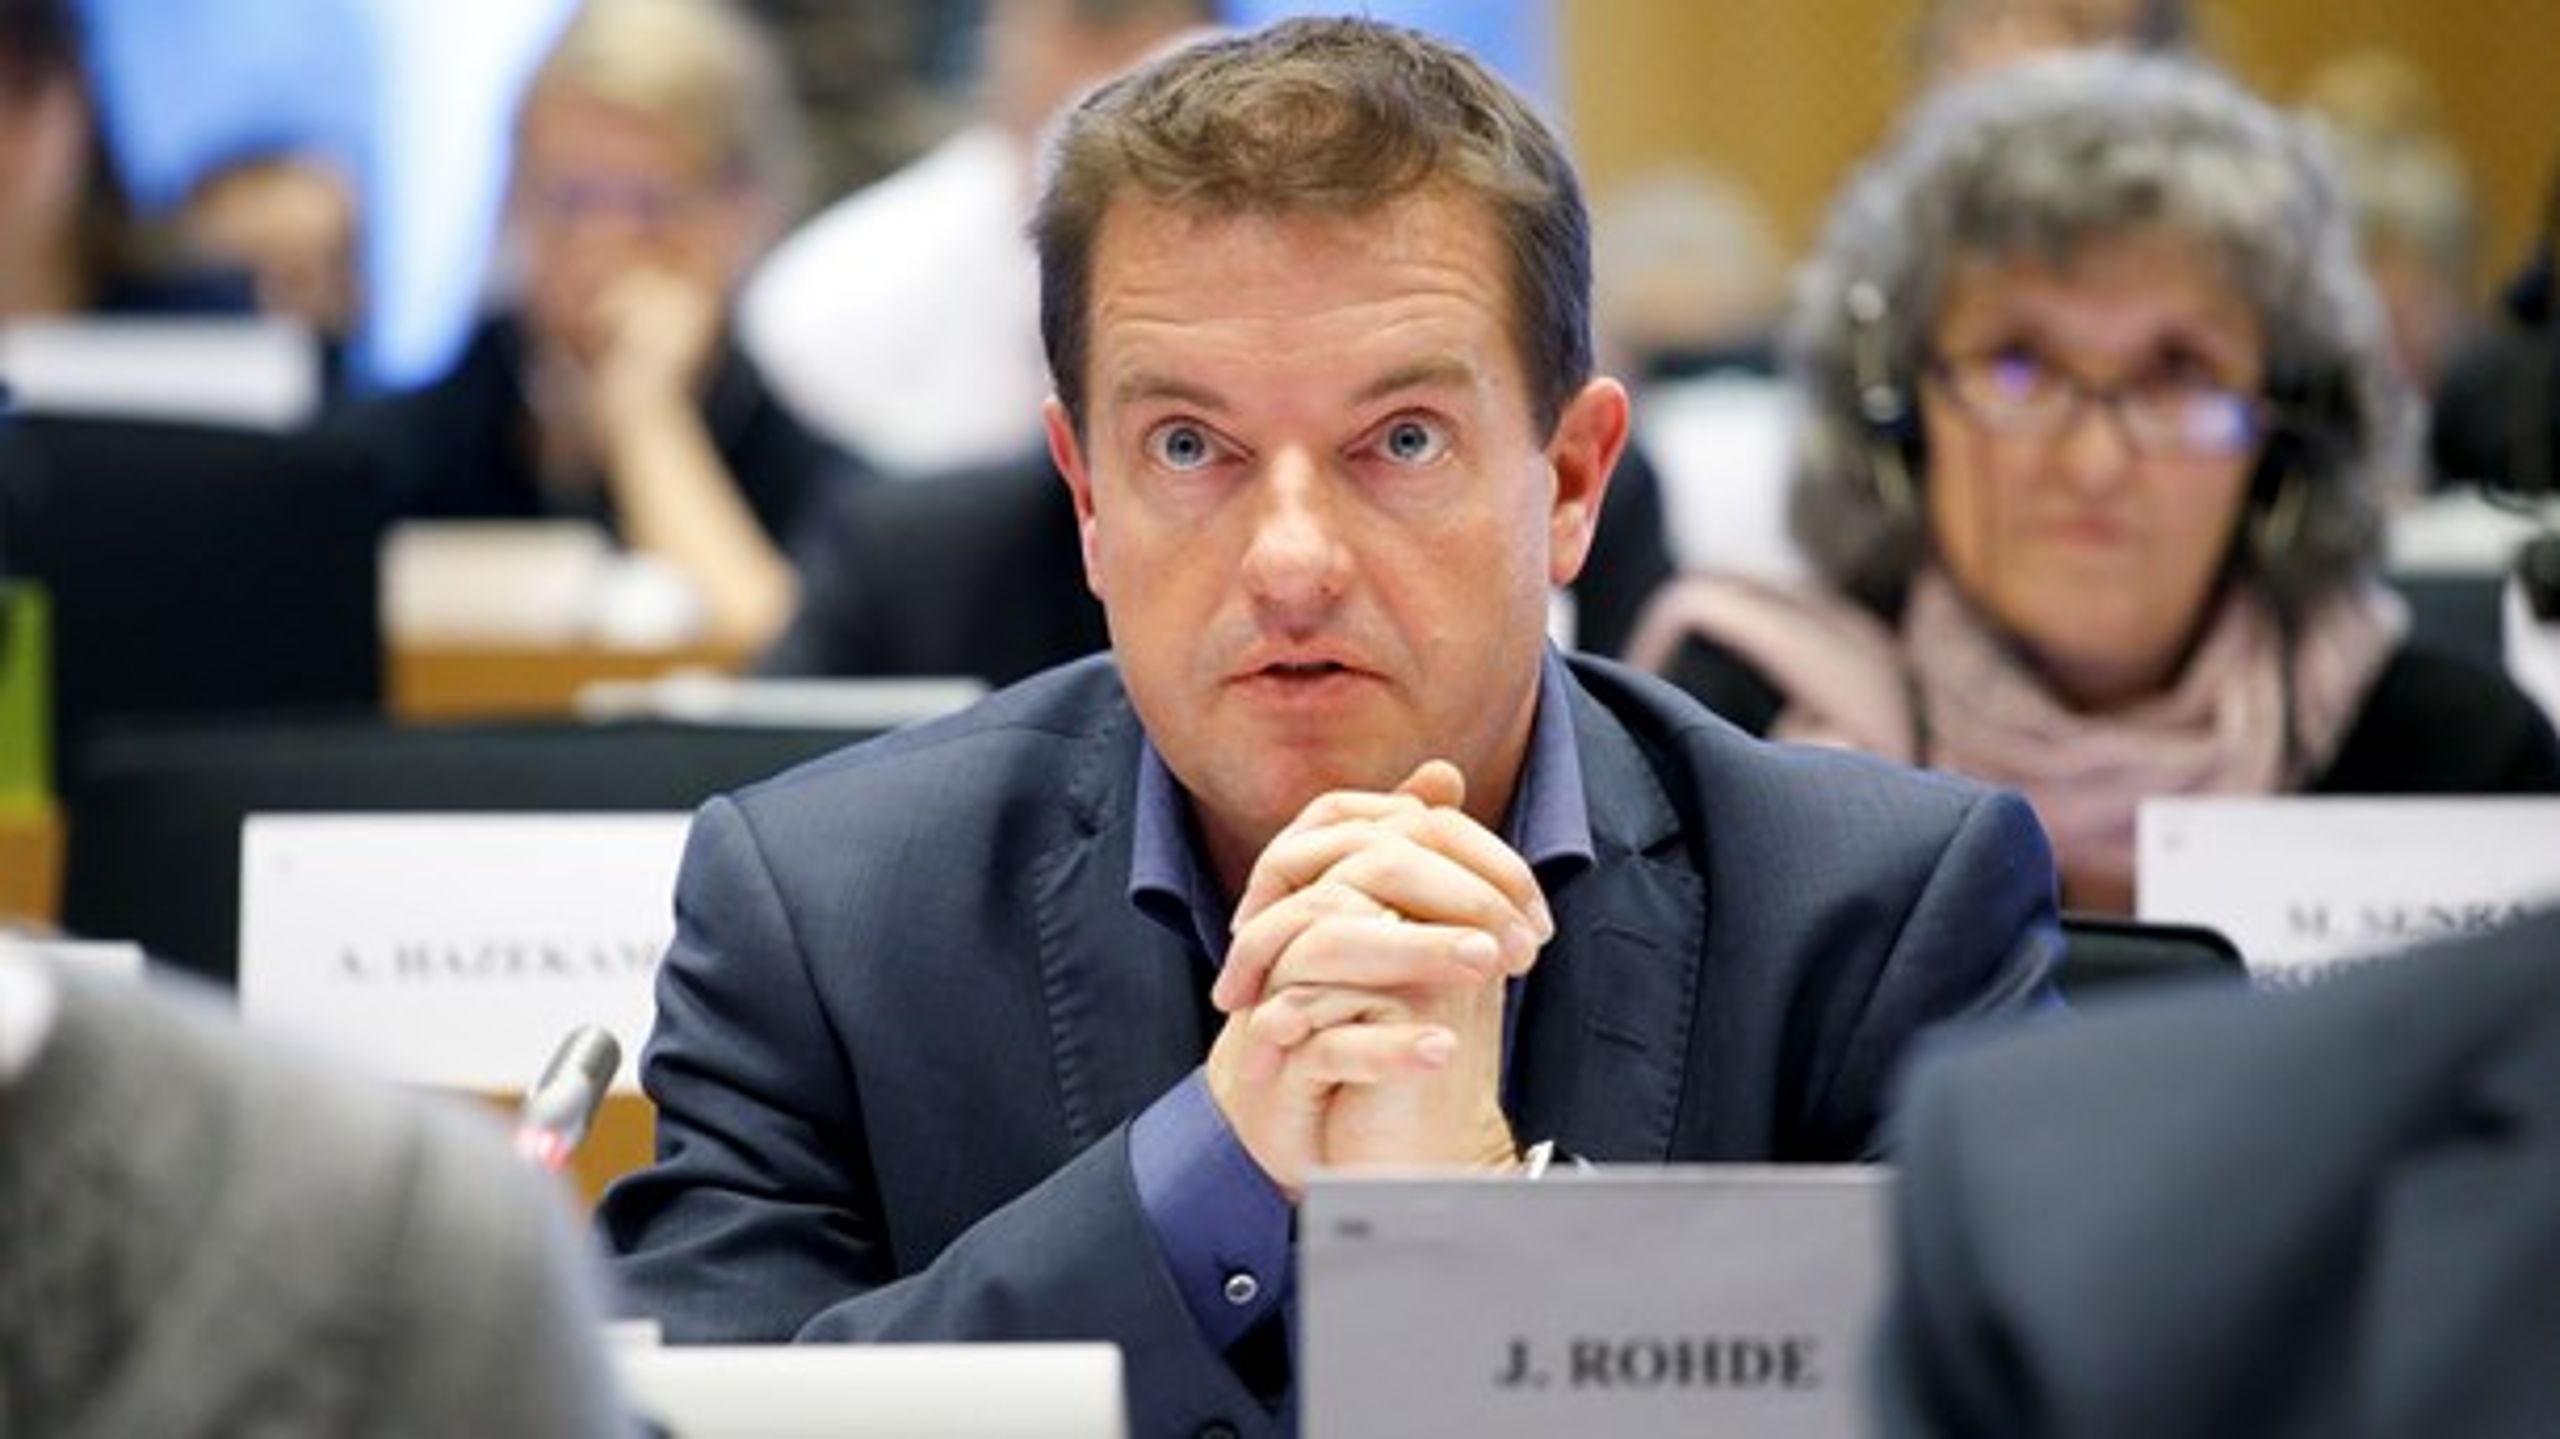 Jens Rohde (RV) har været en af hovedforhandlerne af den nye copyright-reform, som Europa-Parlamentet godkendte ved tirsdagens plenarforsamling i Strasbourg.